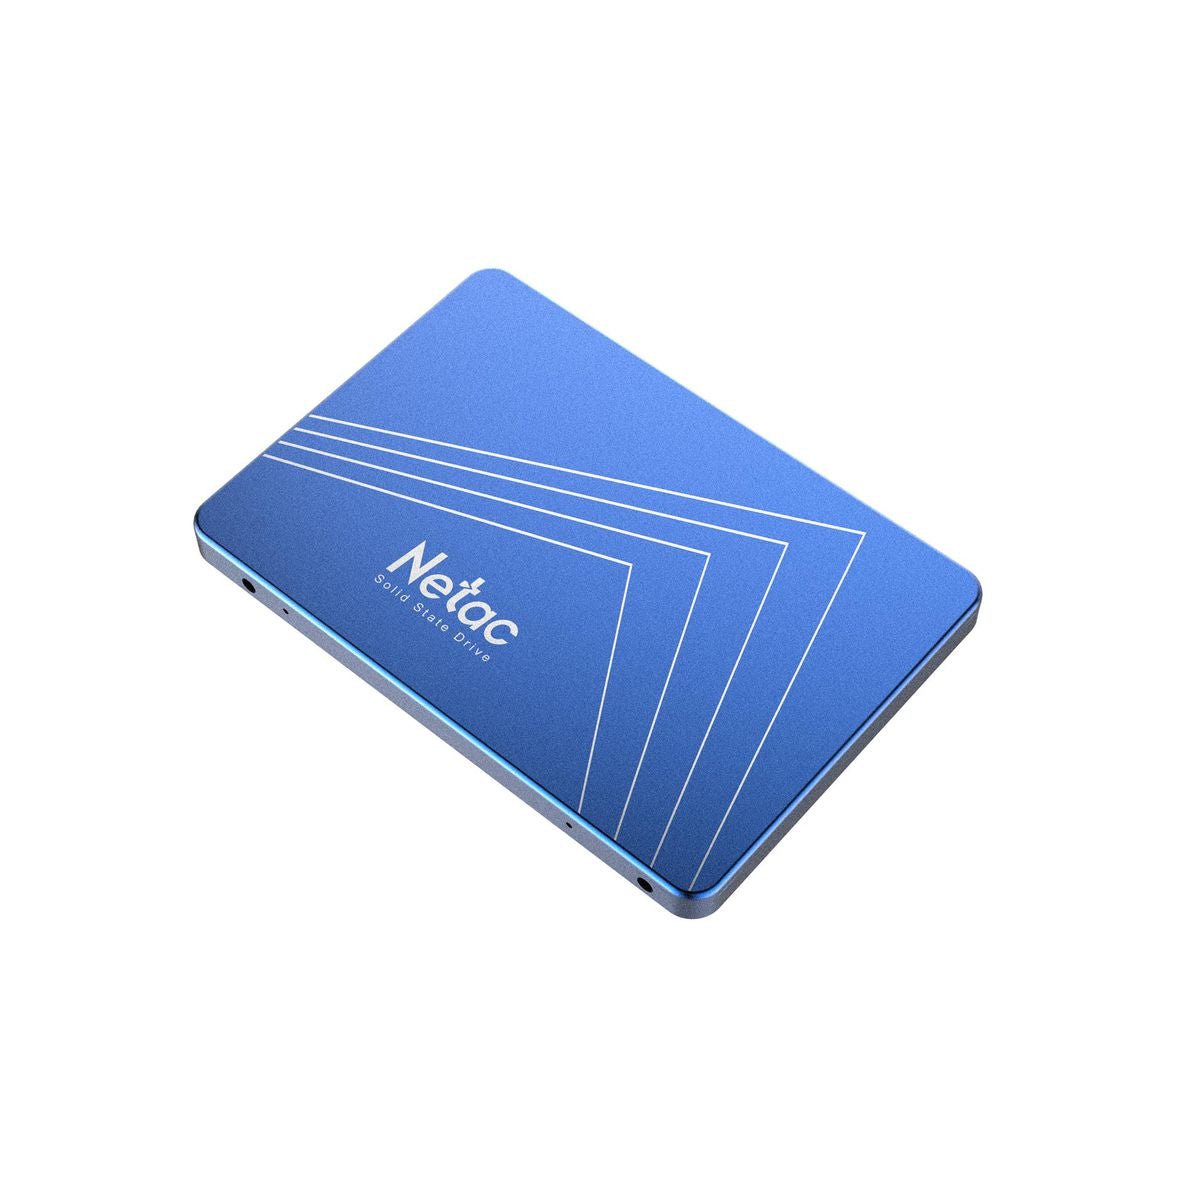 Netac N600S 2TB Internal 2.5